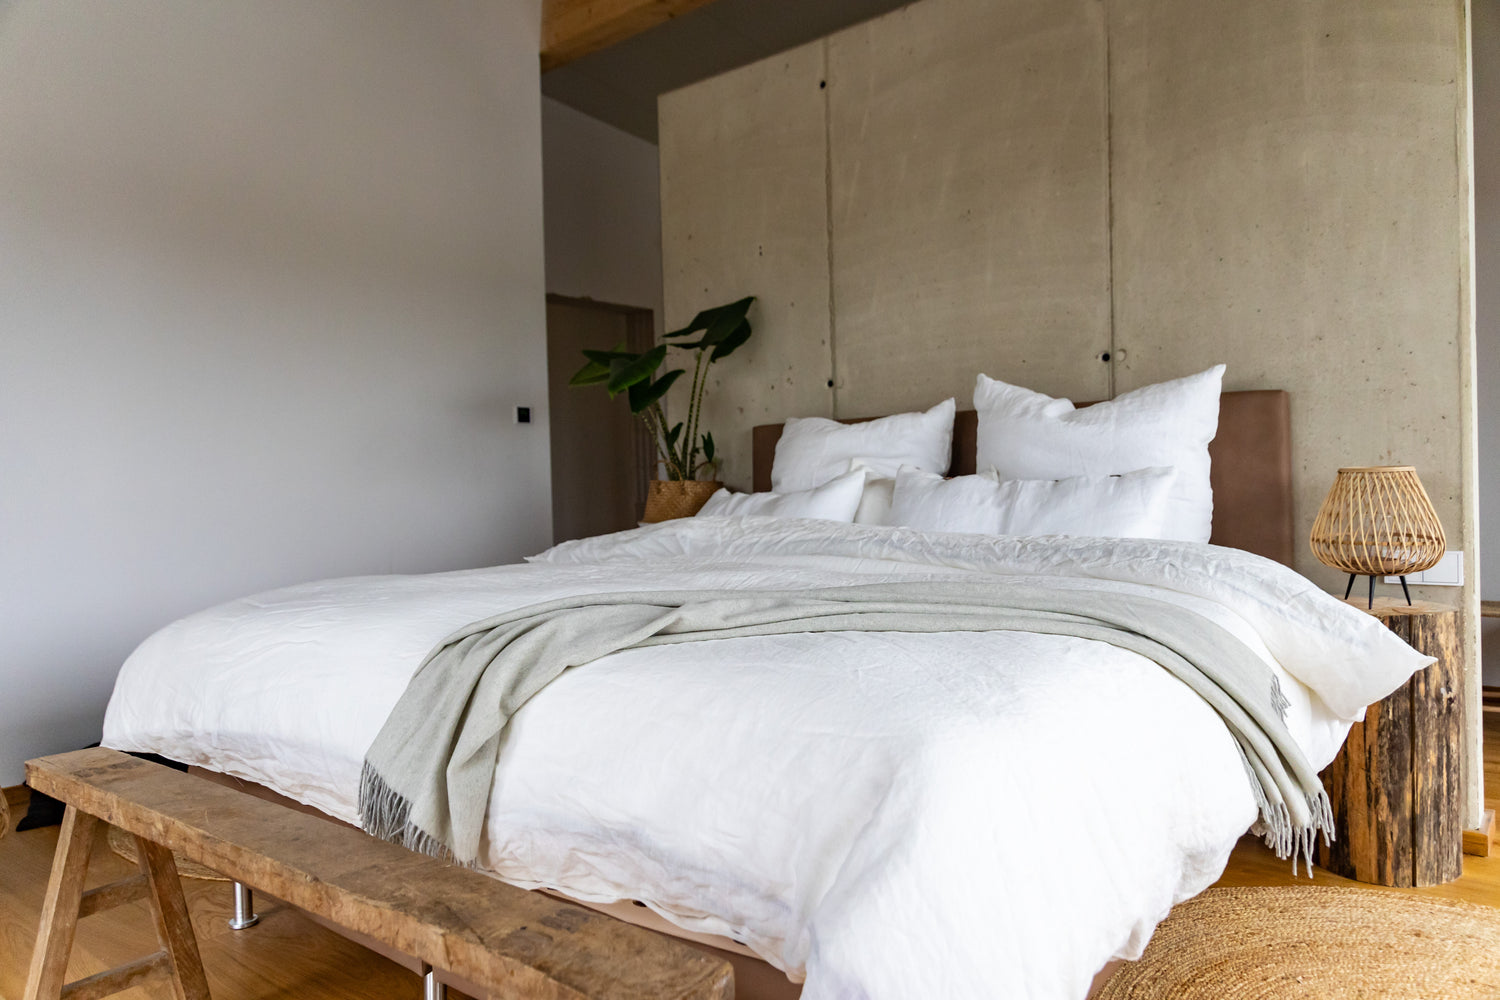 Leinenbettwäsche und Baumwollteppiche für eine gesunde Schlaf-Umgebung